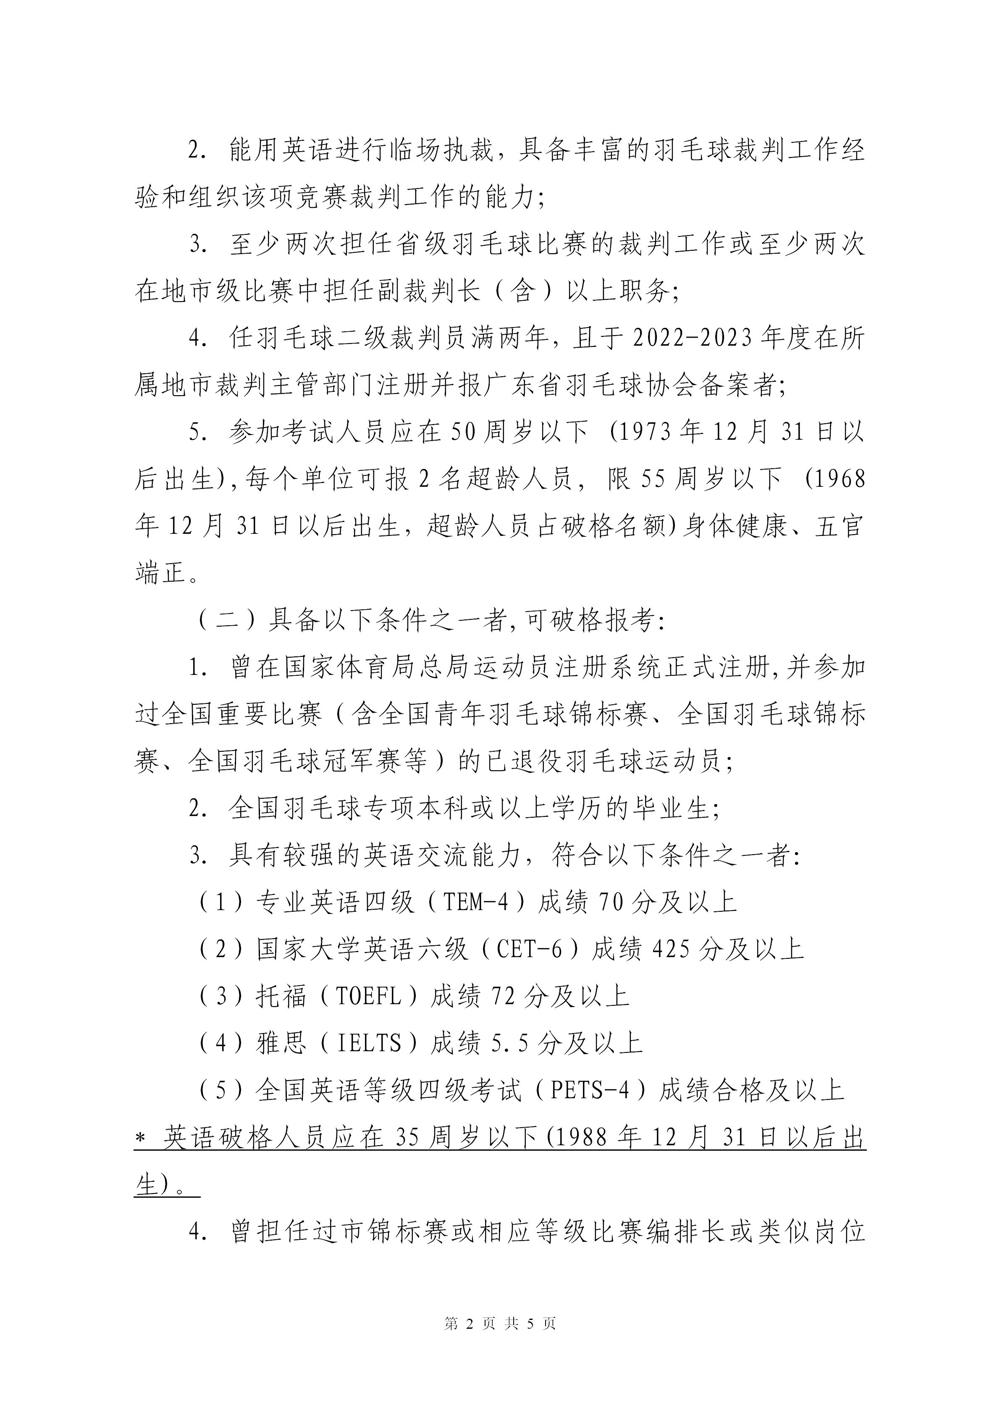 关于2023年广东省羽毛球项目晋升一级裁判员的通知(2)_02